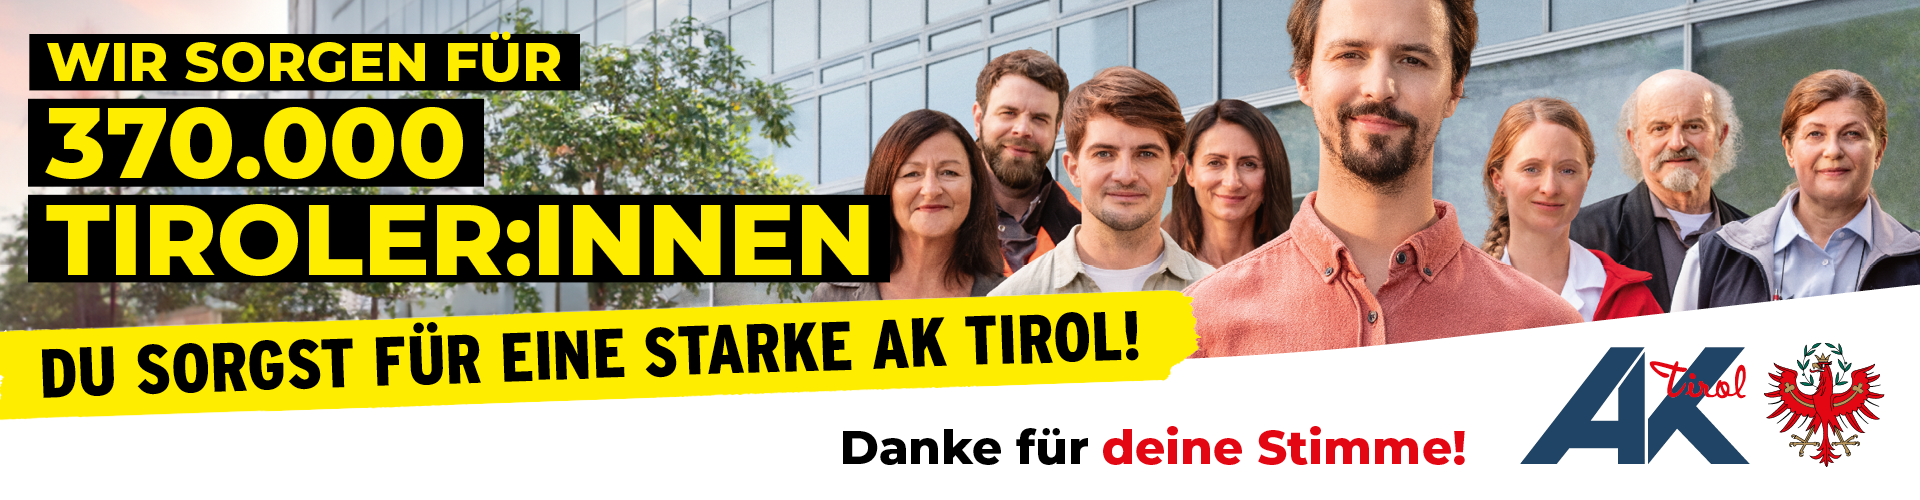 Eine Gruppe von Arbeitnehmer:innen, in gelb auf schwarz steht: Wir sorgen für 370.000 Tiroler:innen, in schwarz auf gelb steht: Sorg du für eine starke AK Tirol und darunter steht: Danke für deine Stimme!